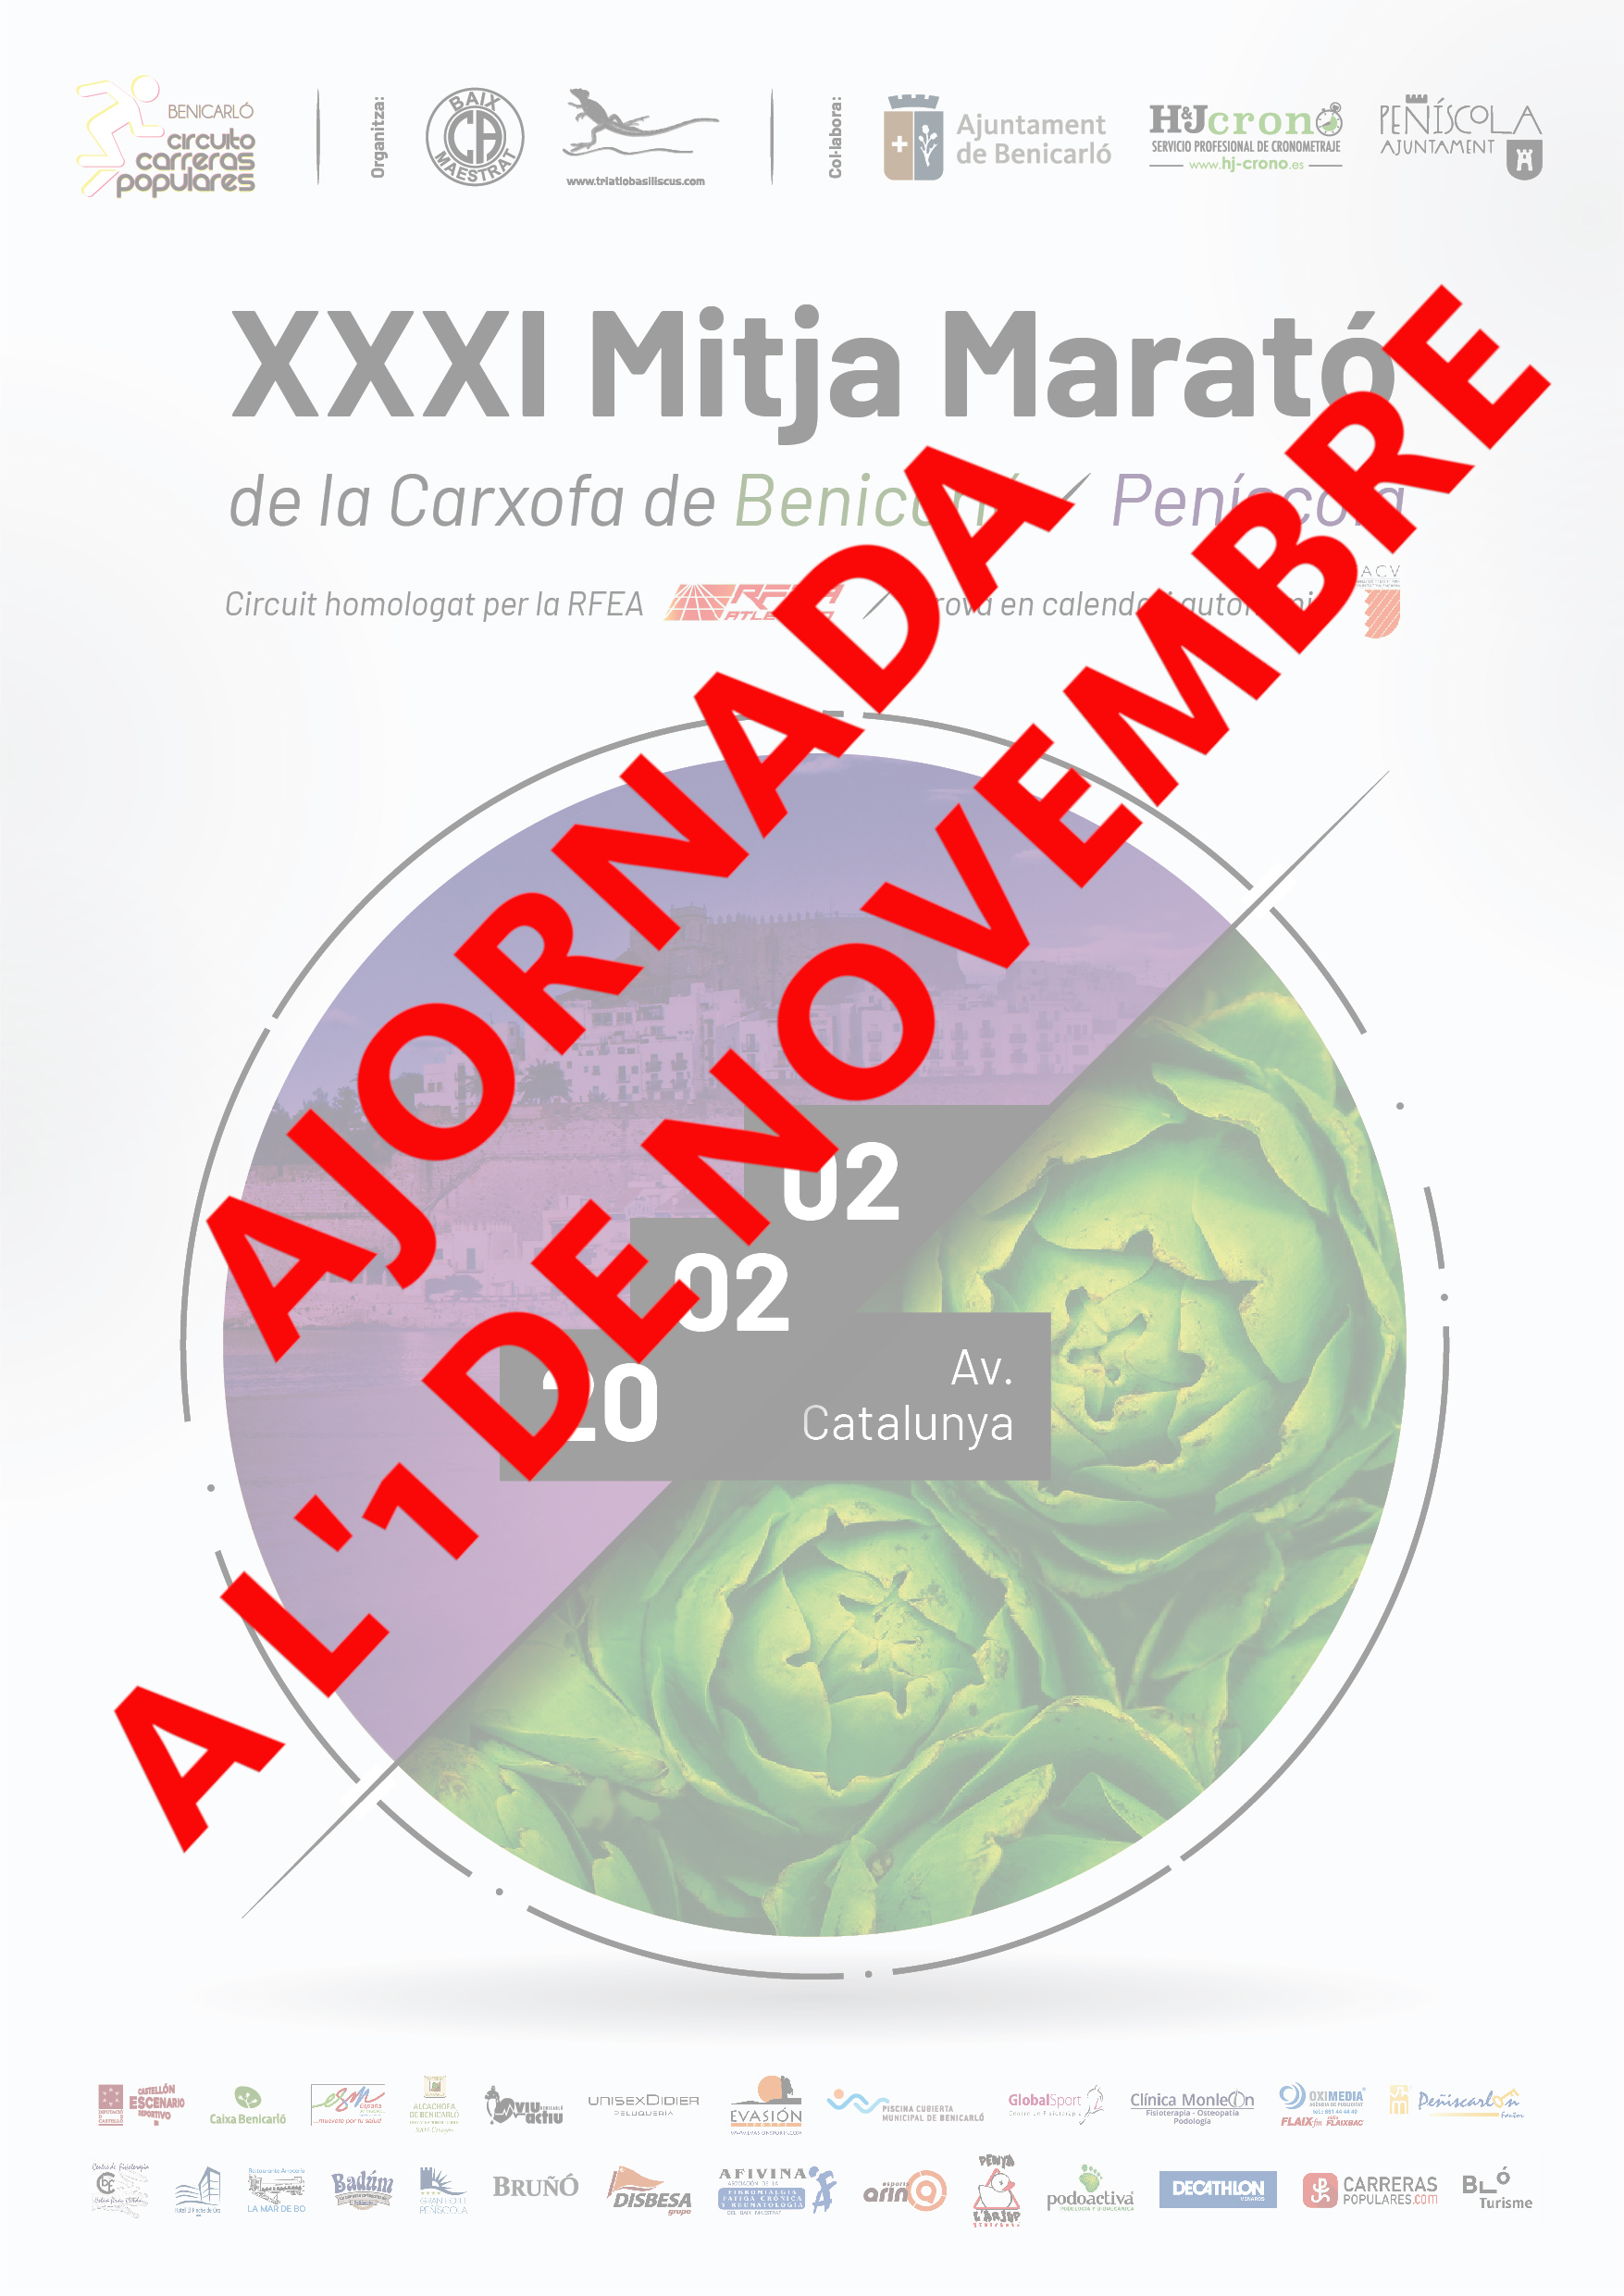 La XXXI Mitja Marató de la Carxofa de Benicarló-Peníscola s’ajorna l’1 de novembre pel COVID19